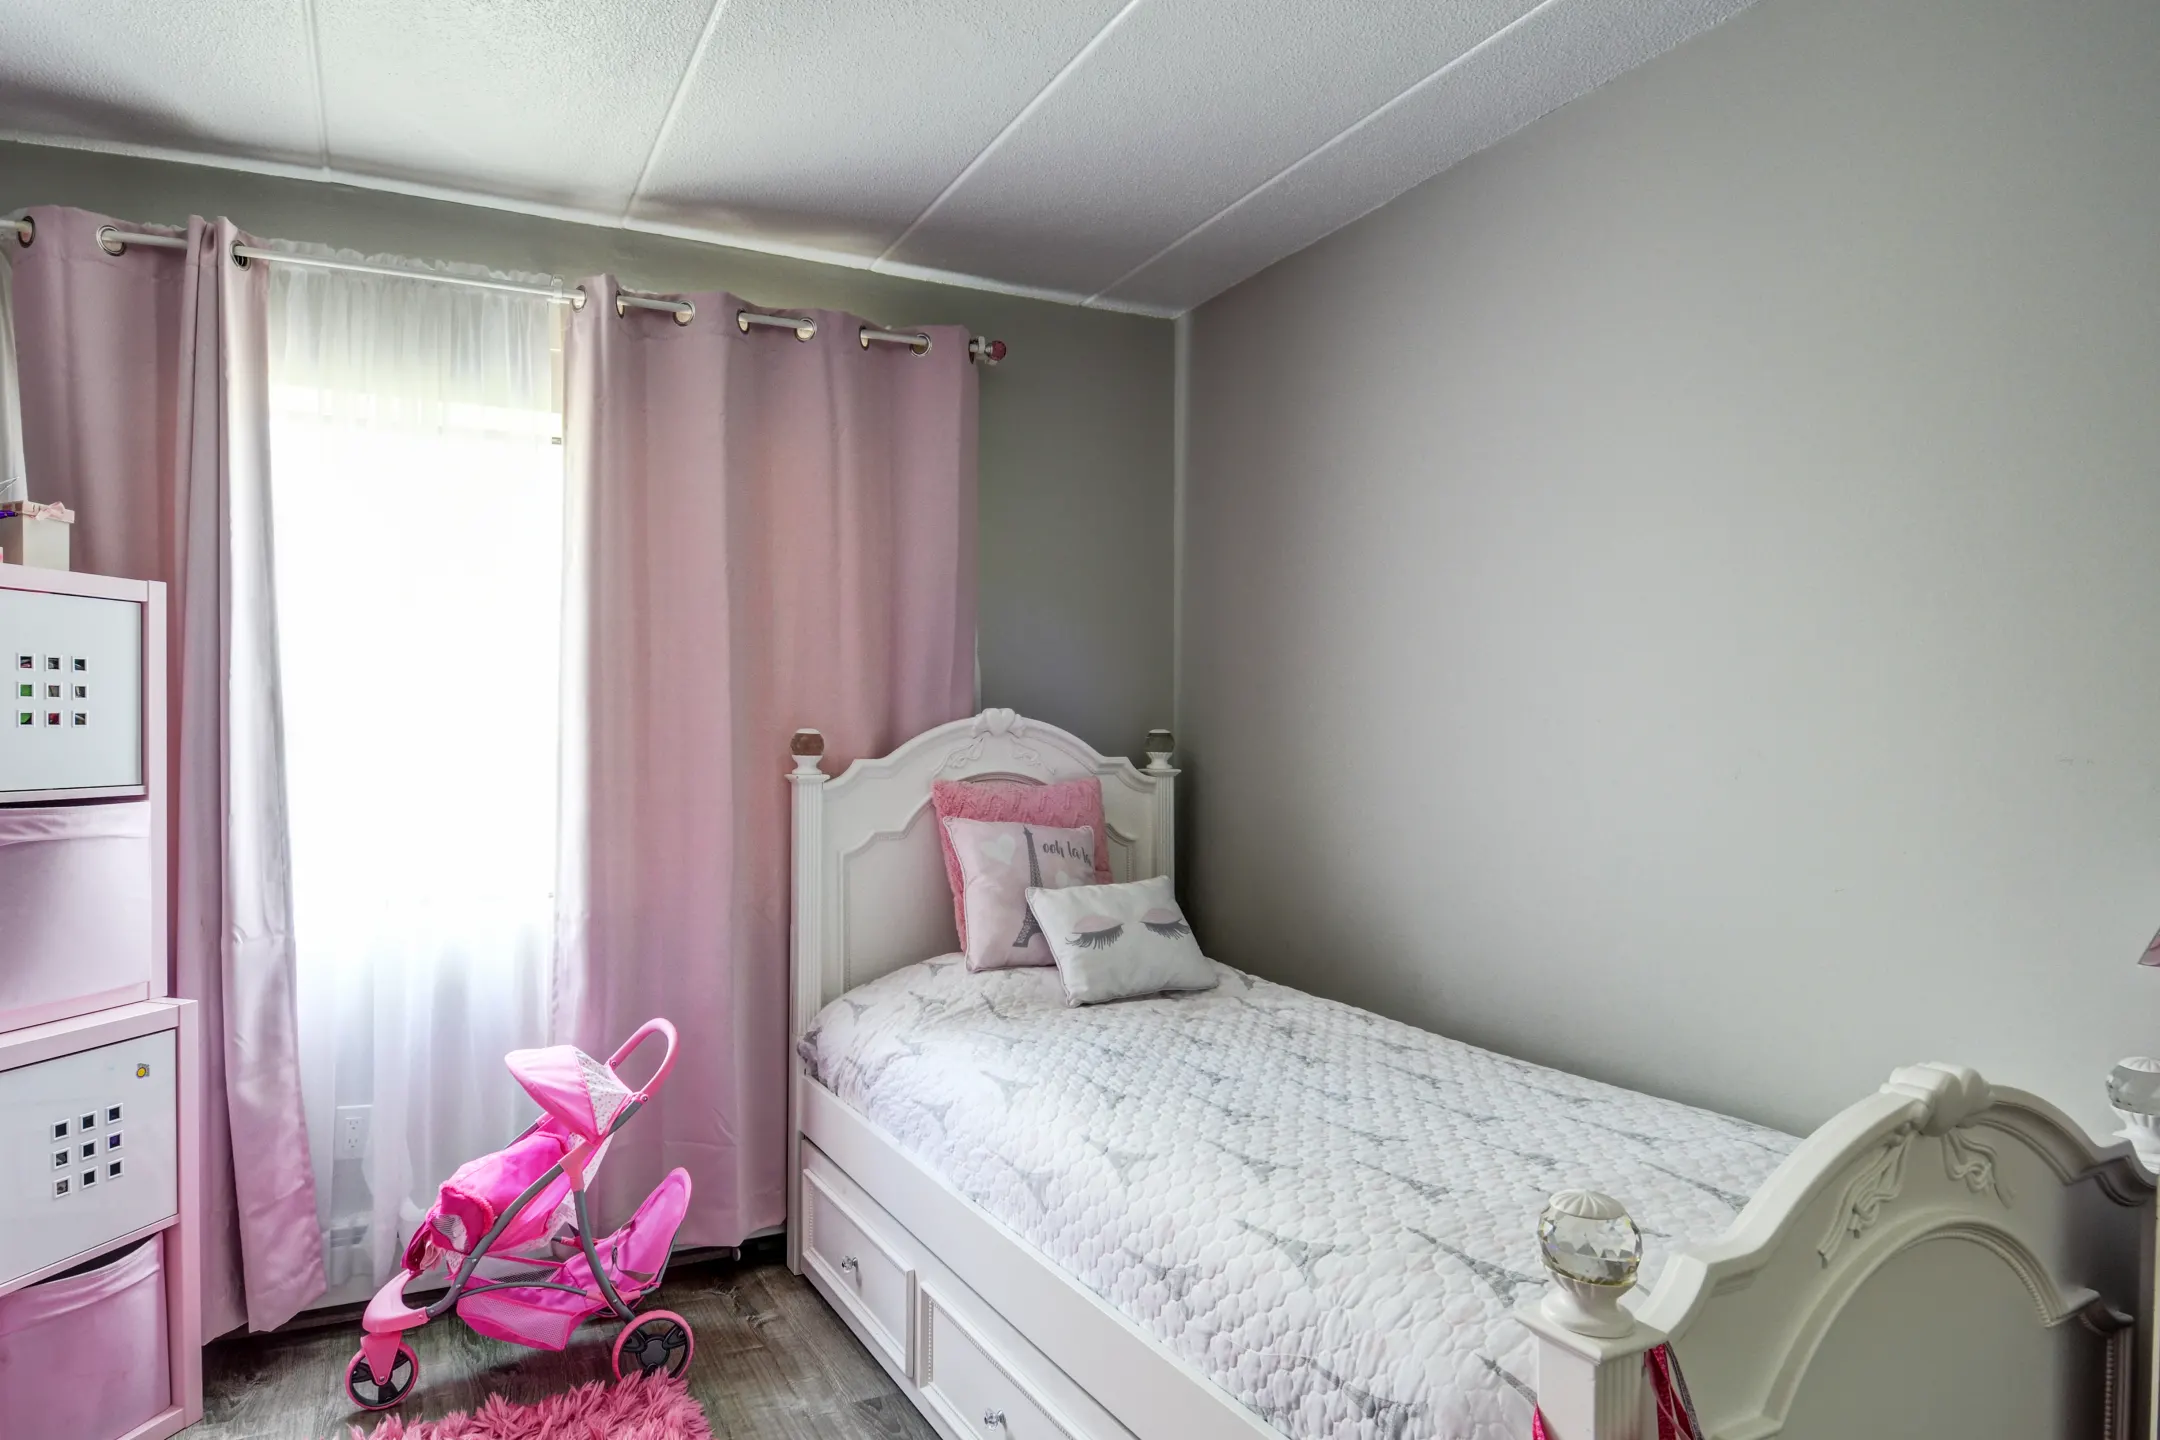 Bedroom - Parkwood Drive Apartments - Malden, MA